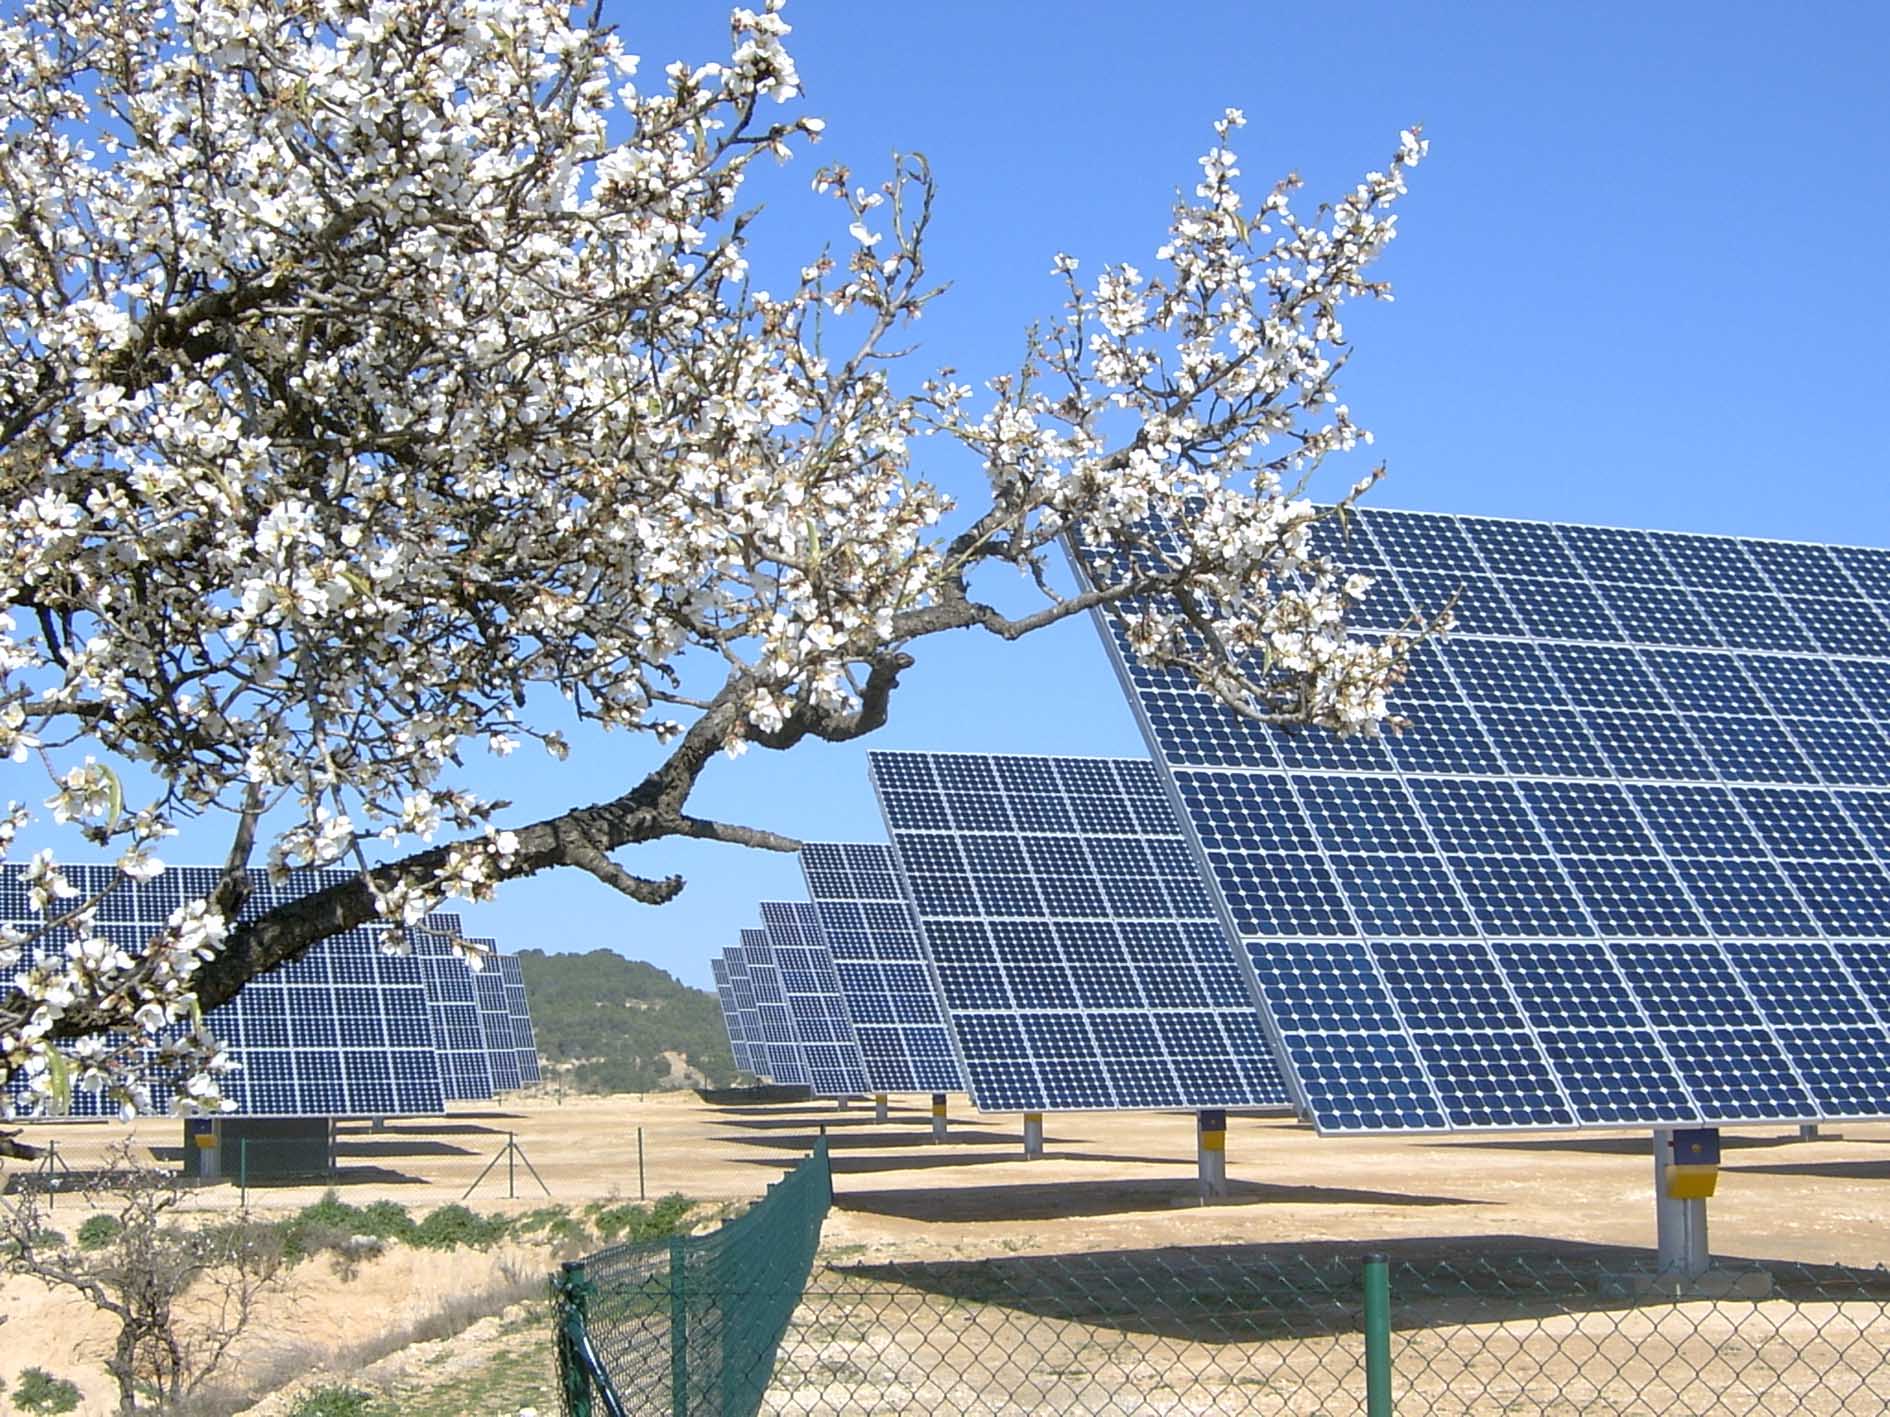 estático Cambiarse de ropa despierta Las energías renovables: solar